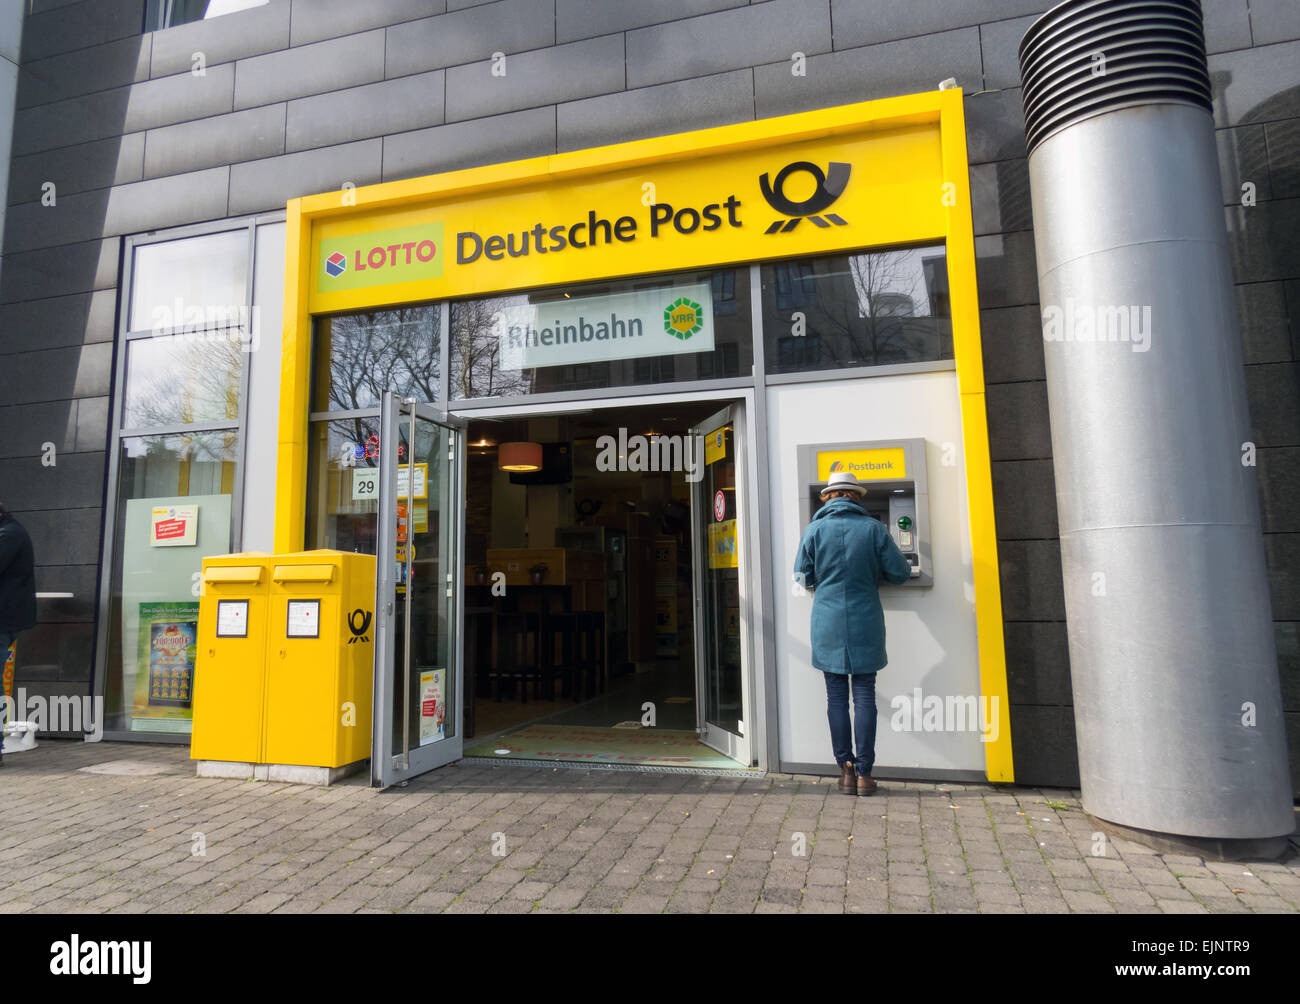 Deutsche Post, Deutsche Post Shop, Düsseldorf Stockfotografie - Alamy